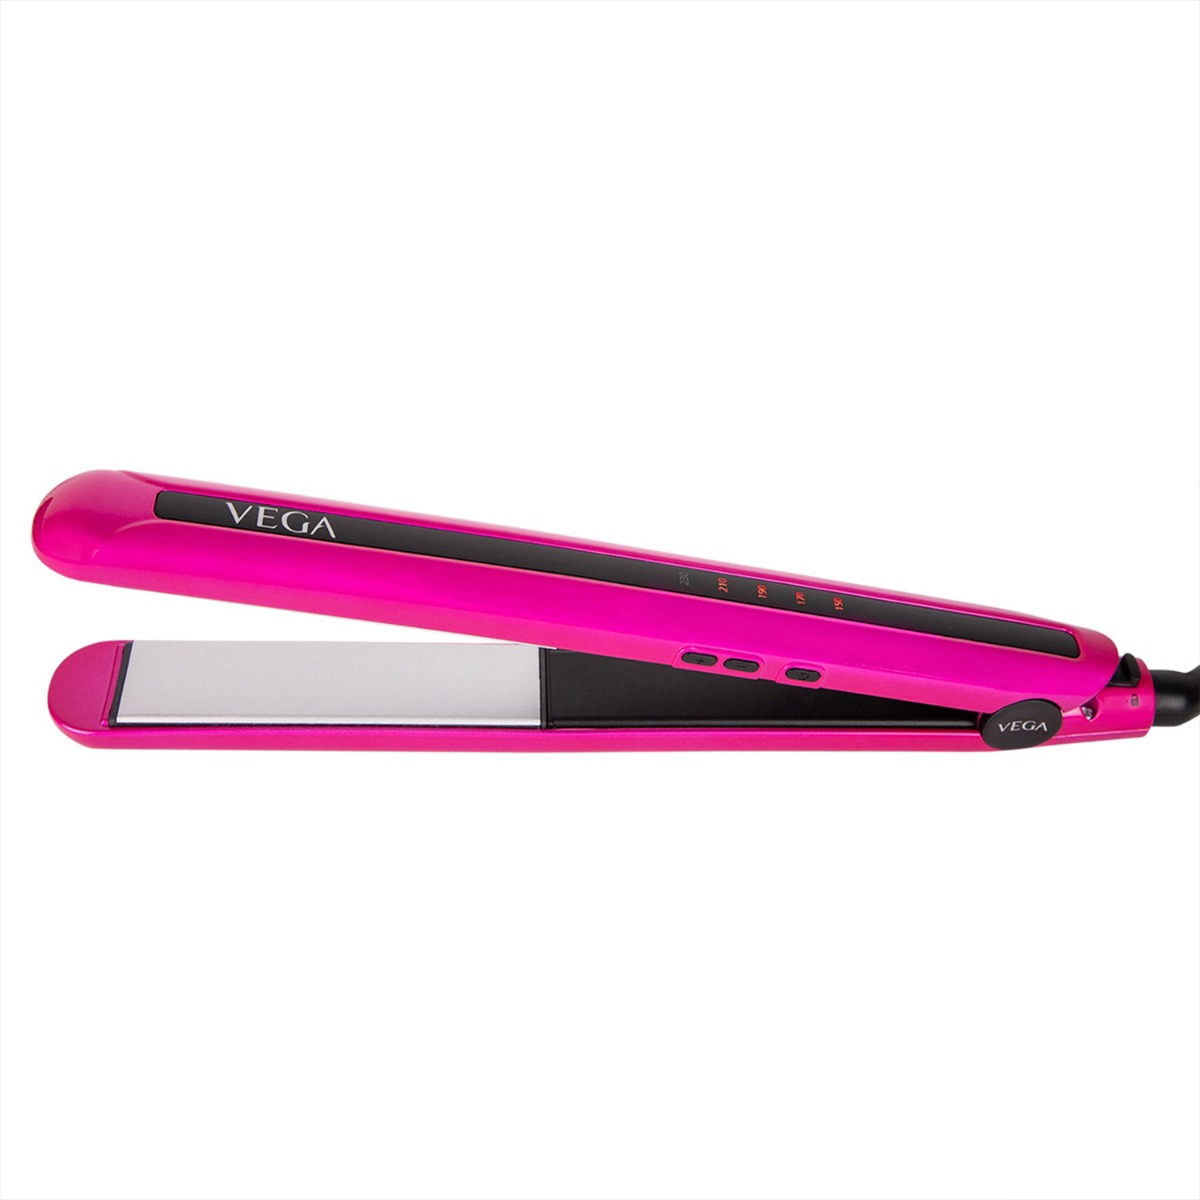 VEGA Trendy Hair Straightener (VHSH-16), Pink